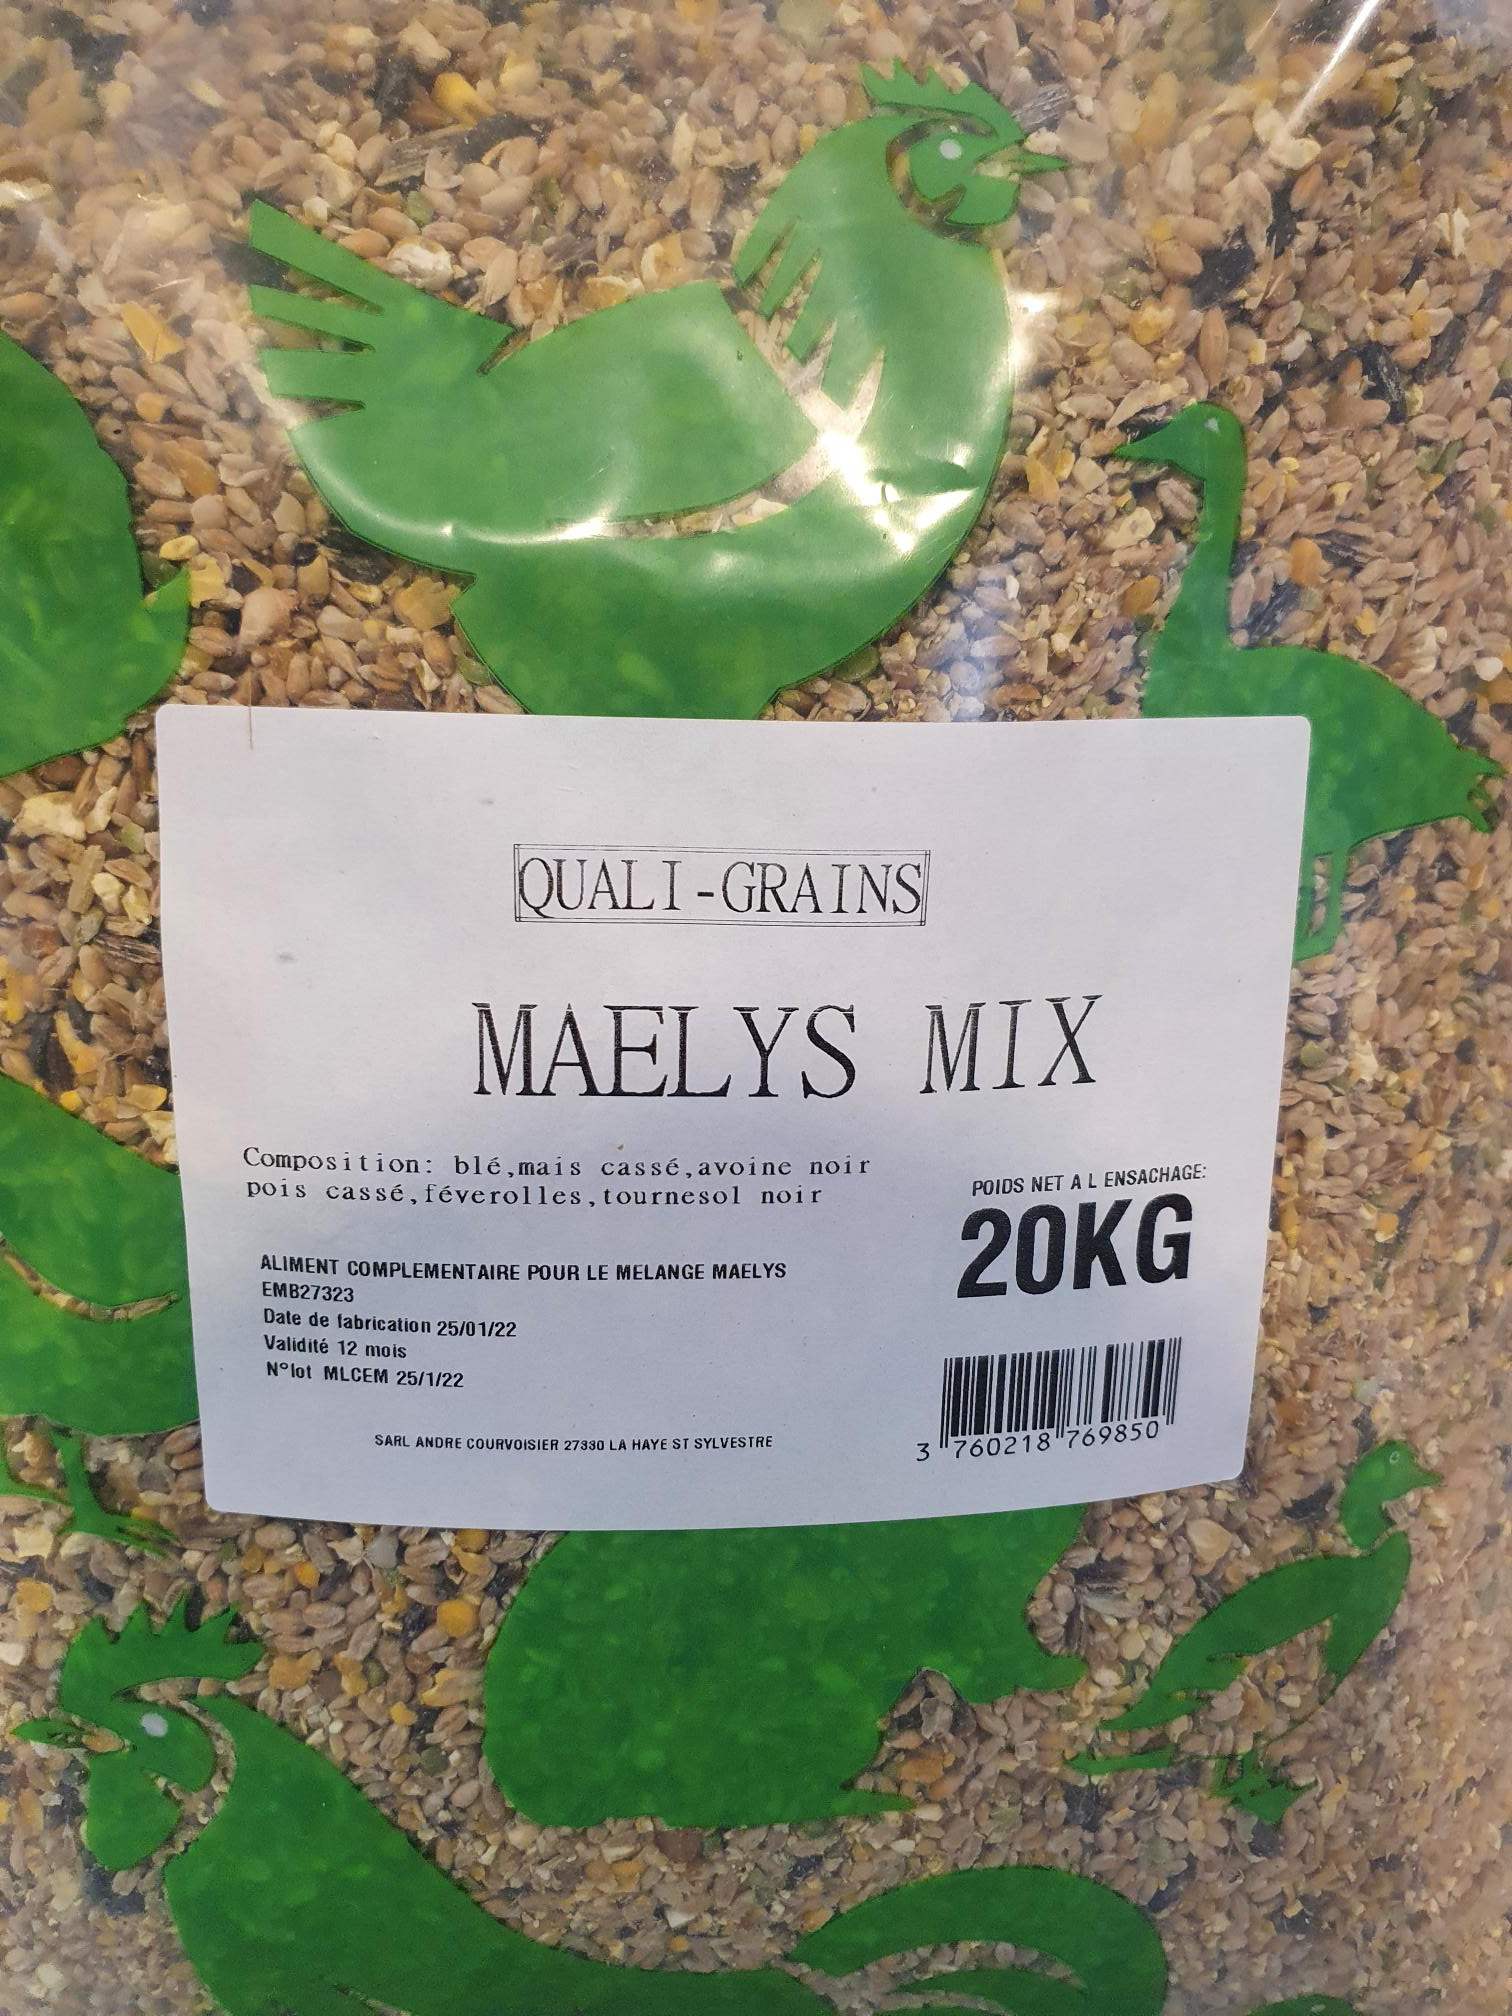 Maelys mix